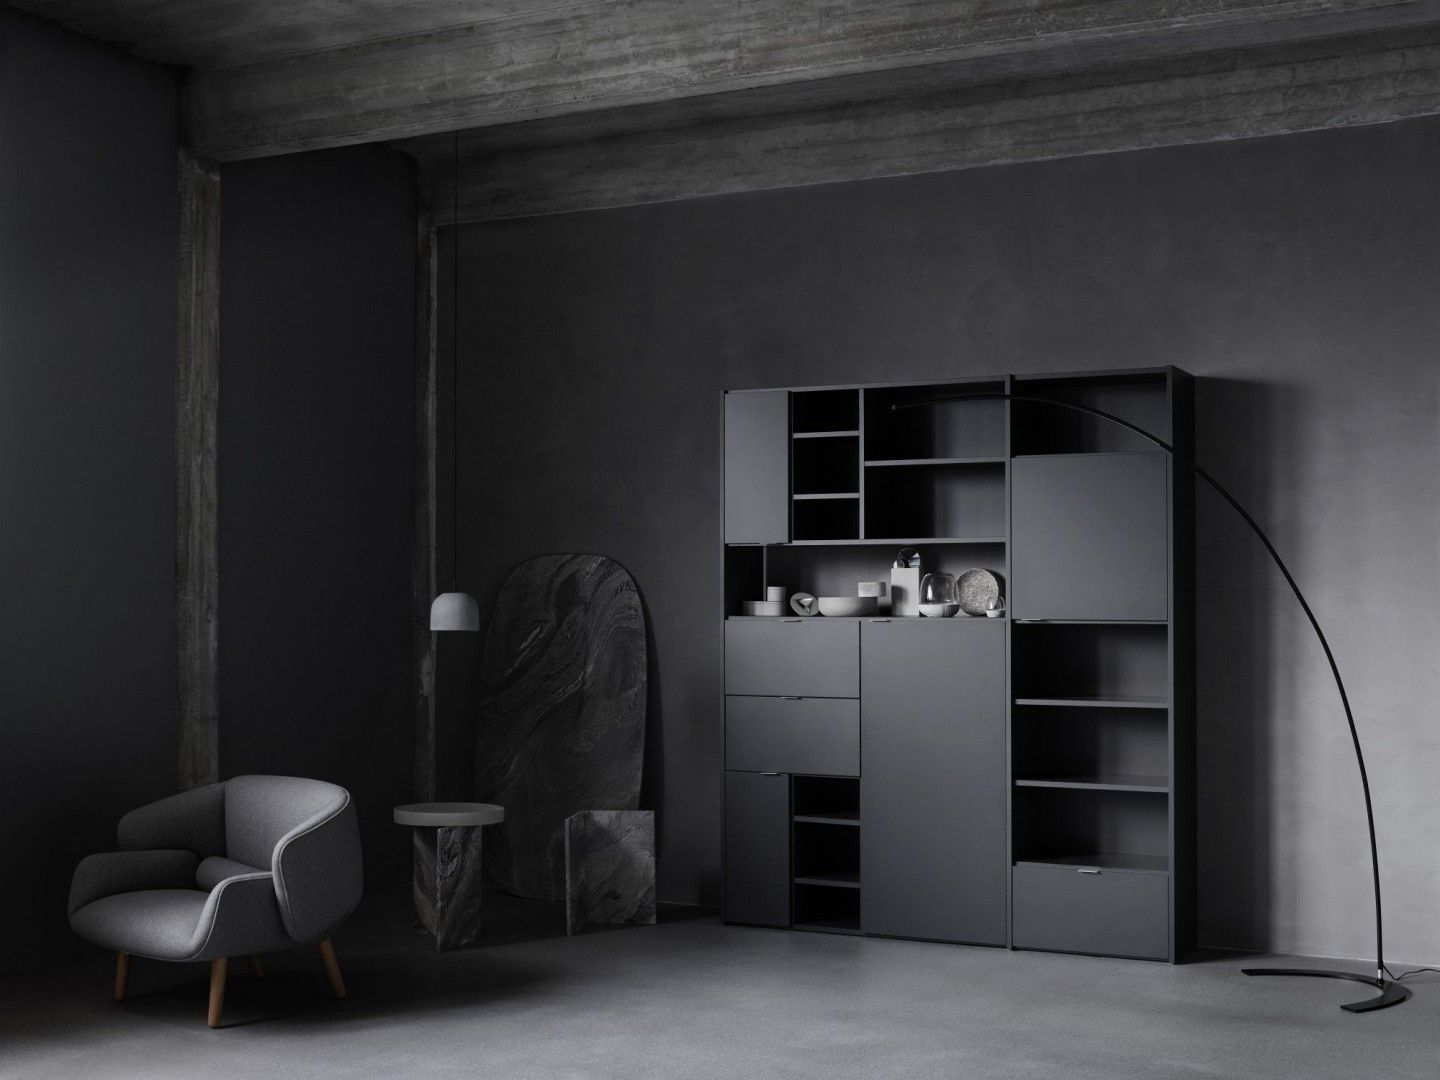 Meble w czarnym kolorze świetnie komponują się z wnętrzami w różnych stylach - minimalistycznym, skandynawskim, klasycznym czy loftowym. Fot. BoConcept